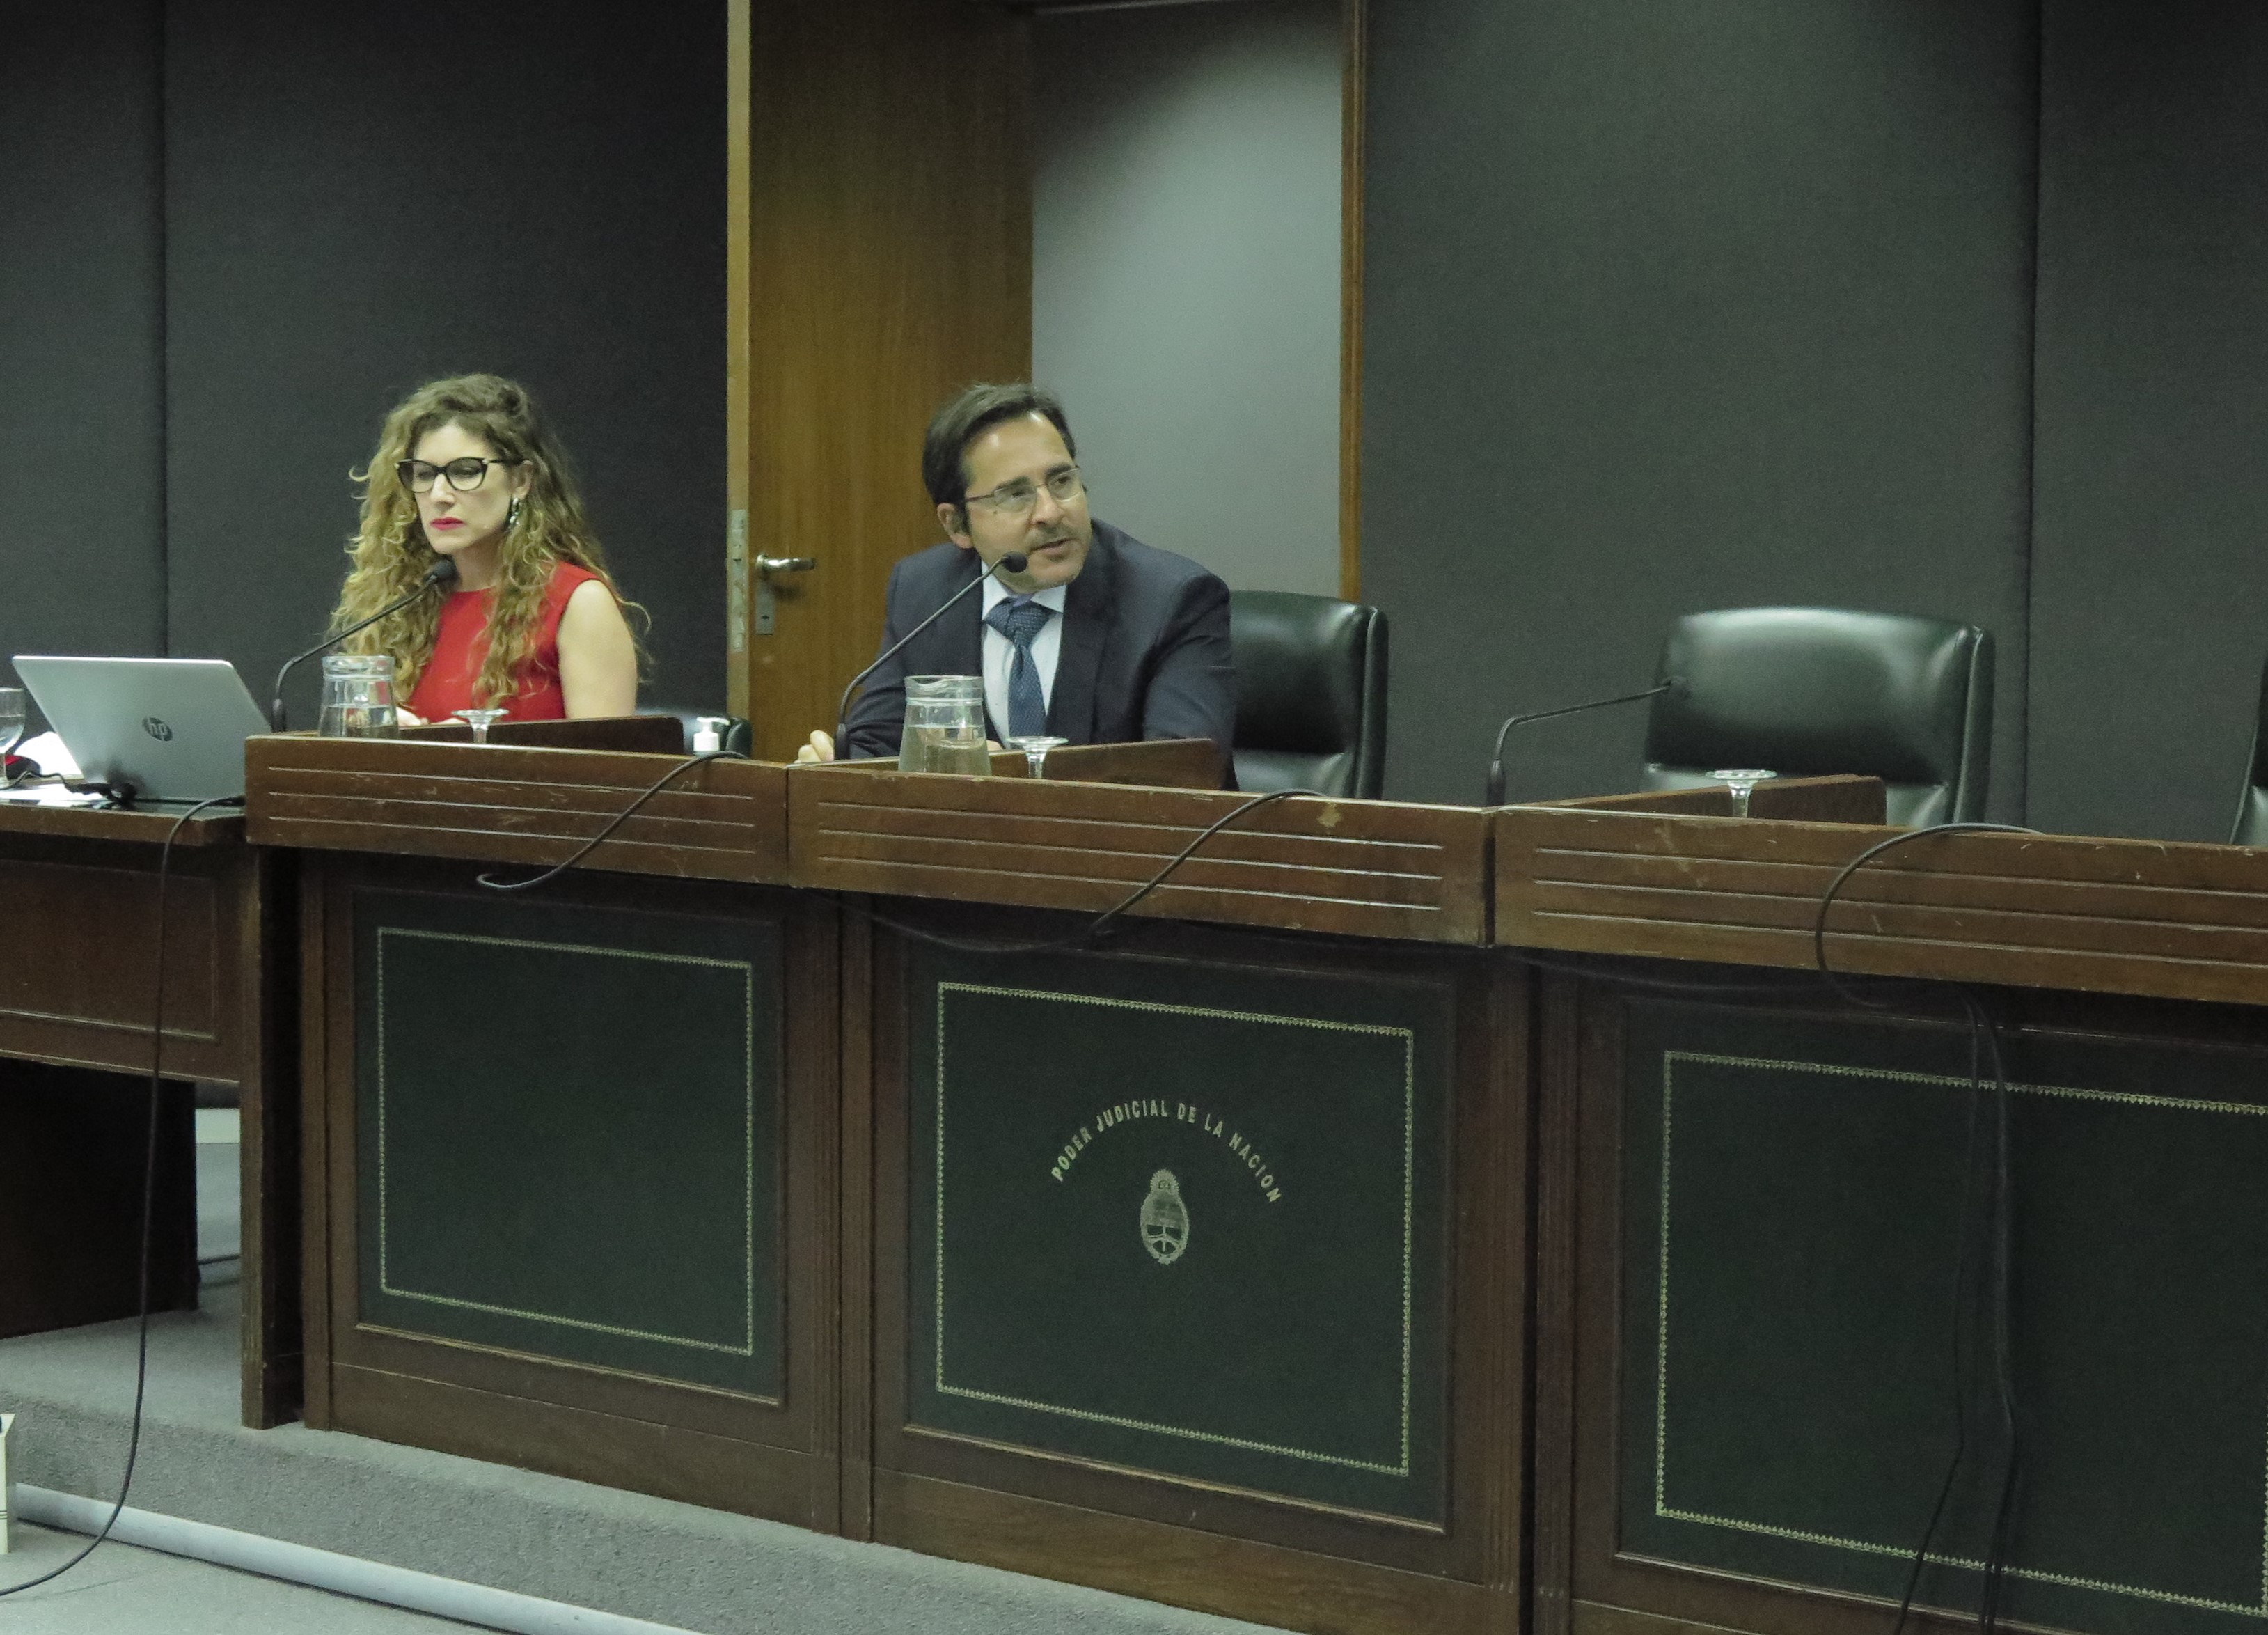 El juez Machado Pelloni presidió el cierre del debate desde la sala de audiencias del TOF de Mar del Plata. - Fotos: Belén Cano / Ministerio Público Fiscal.